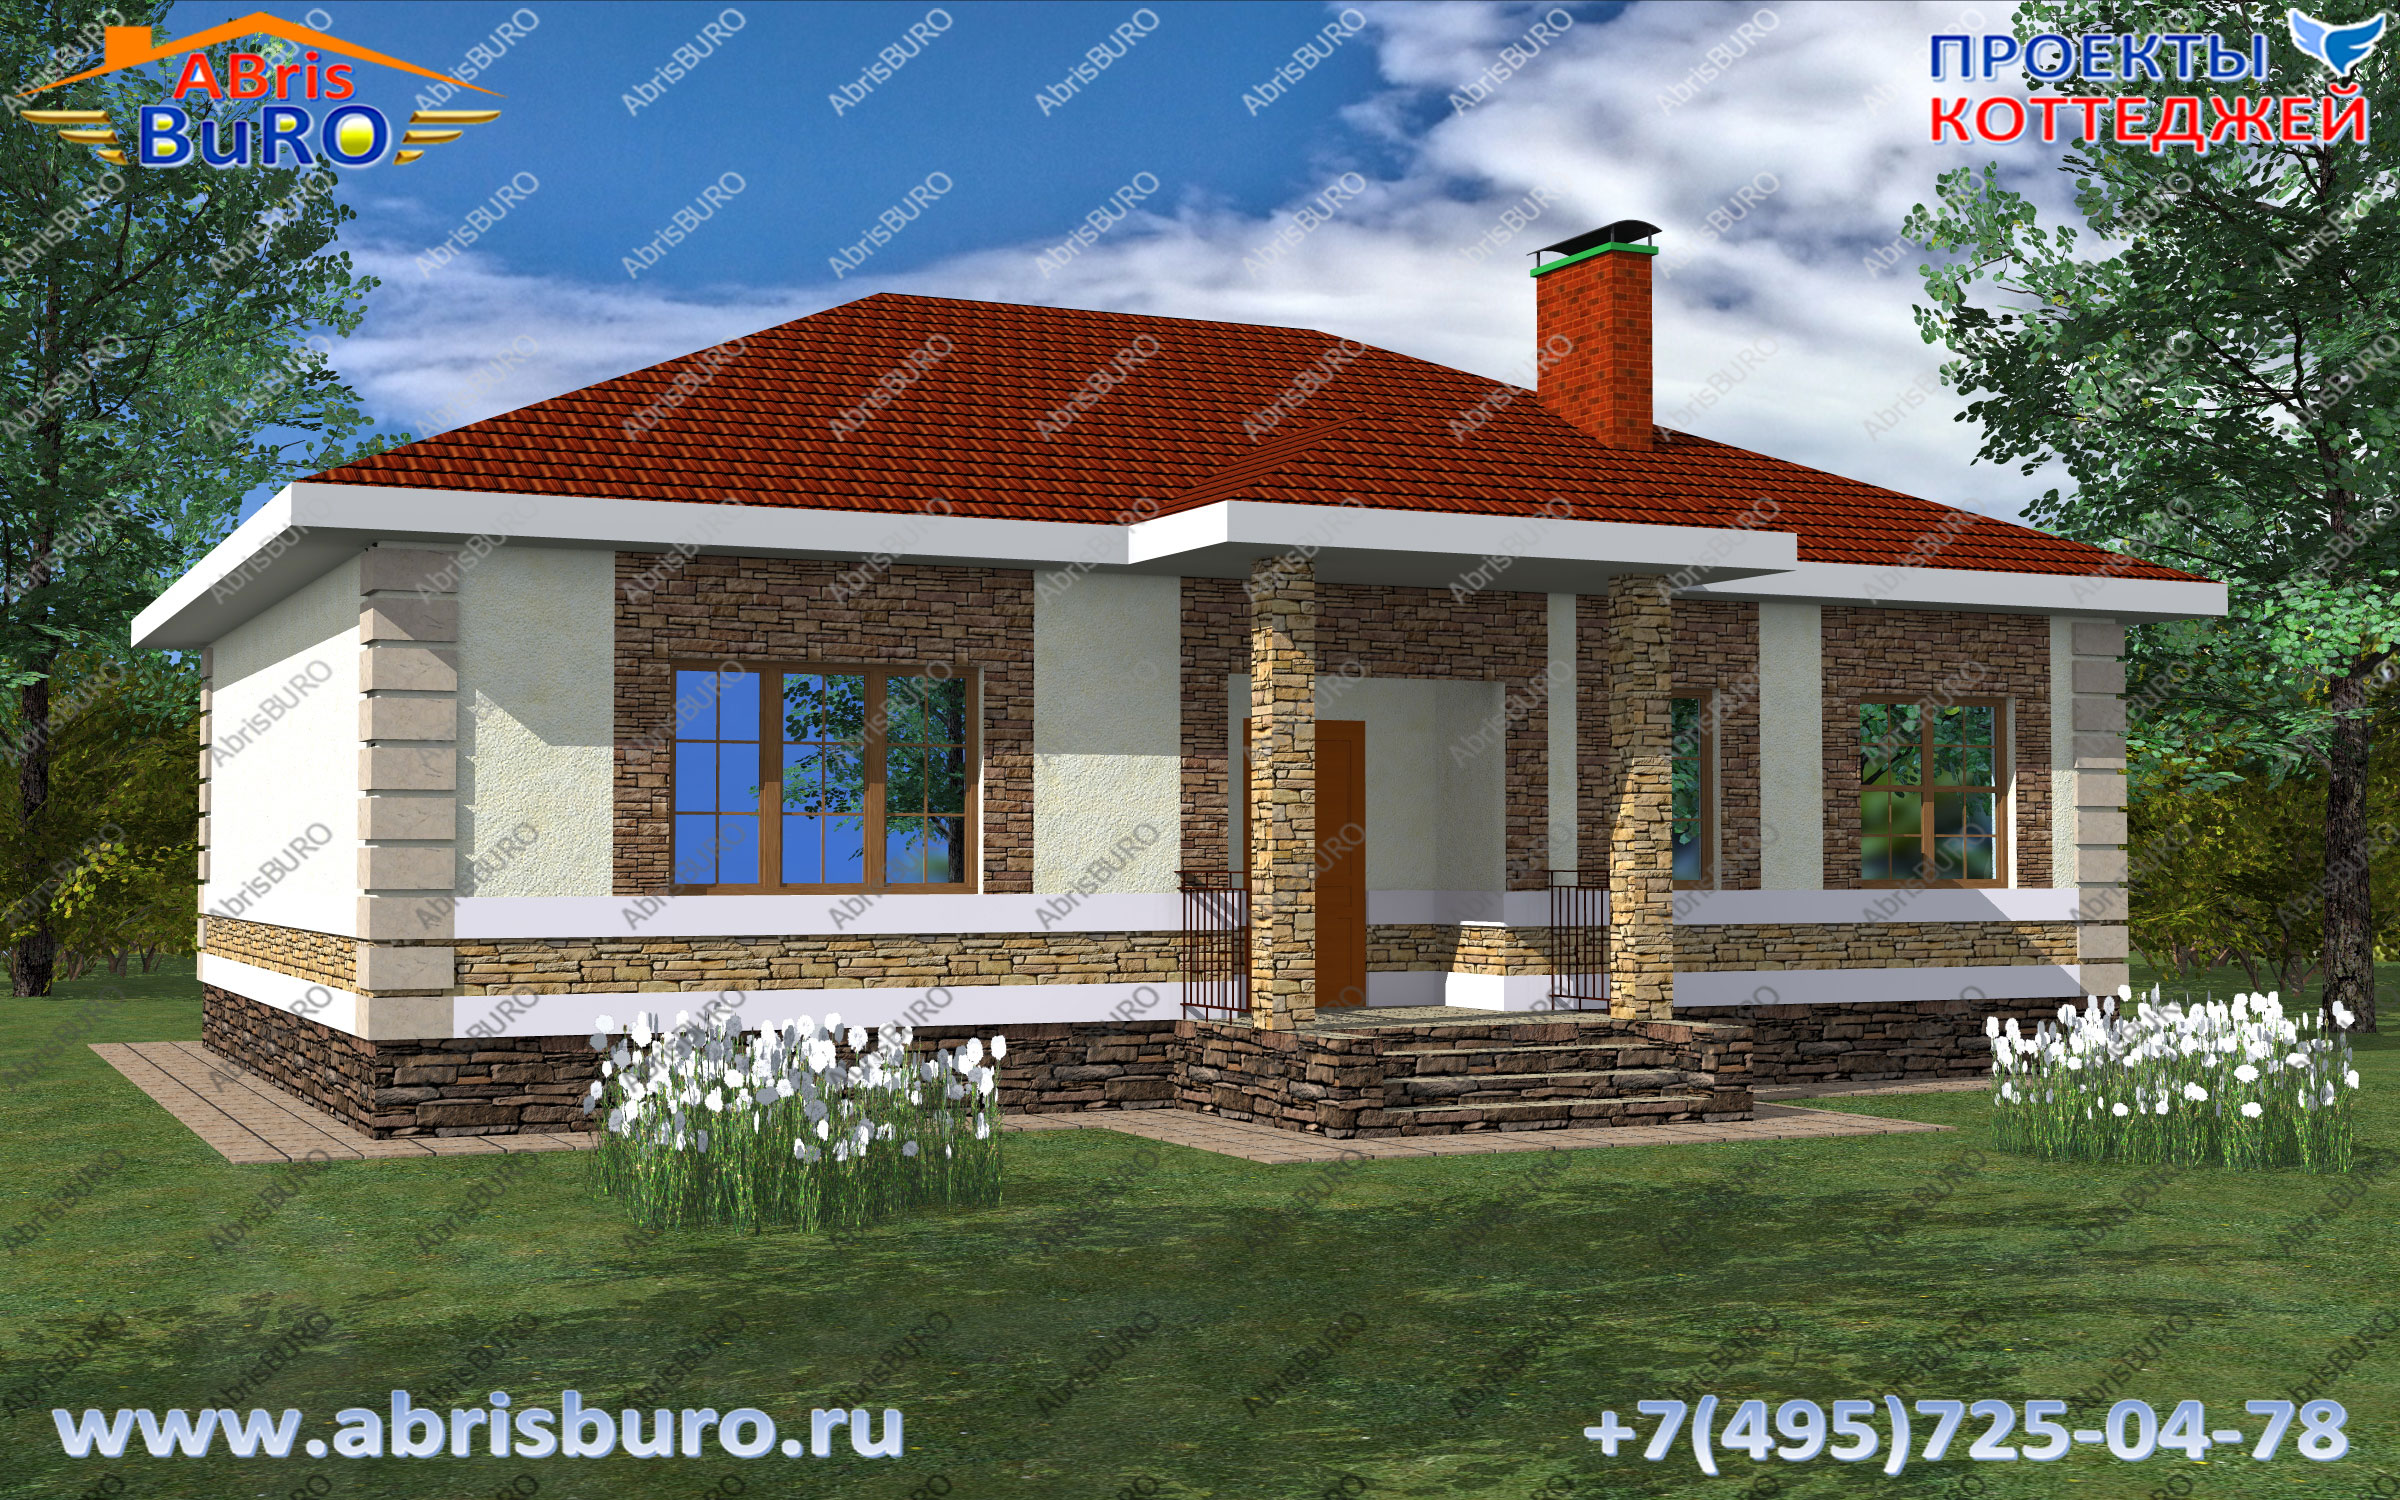 Одноэтажные коттеджи на сайте www.abrisburo.ru